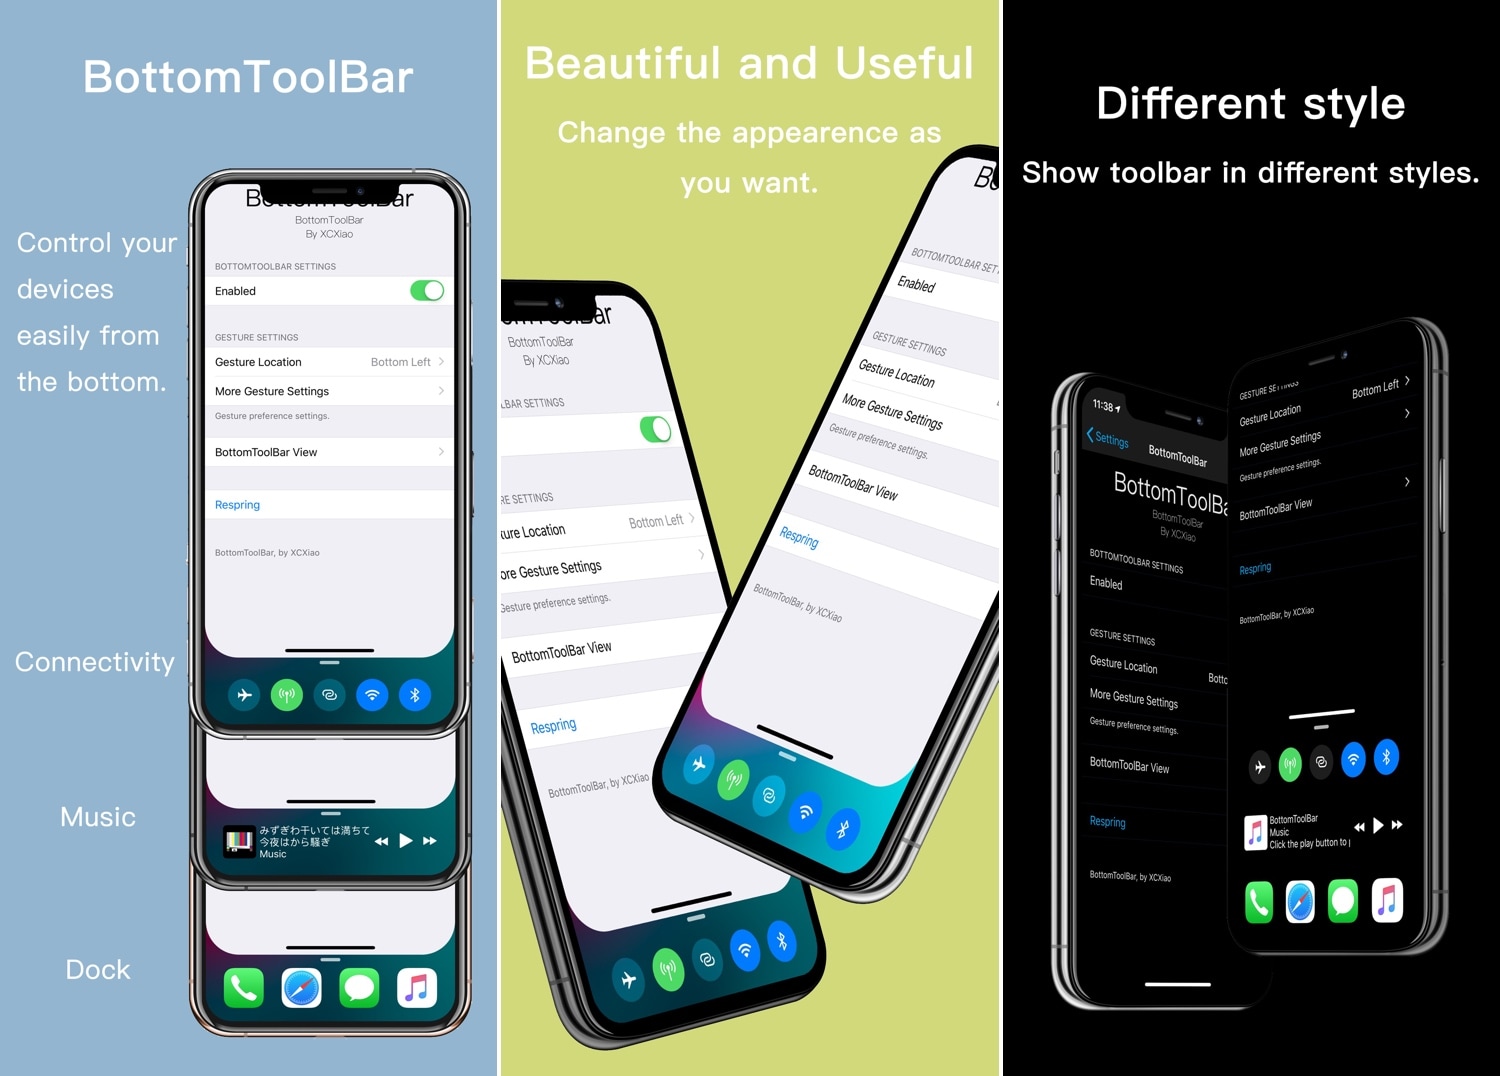 BottomToolBar memberi Anda akses ke fungsi terpenting iPhone Anda